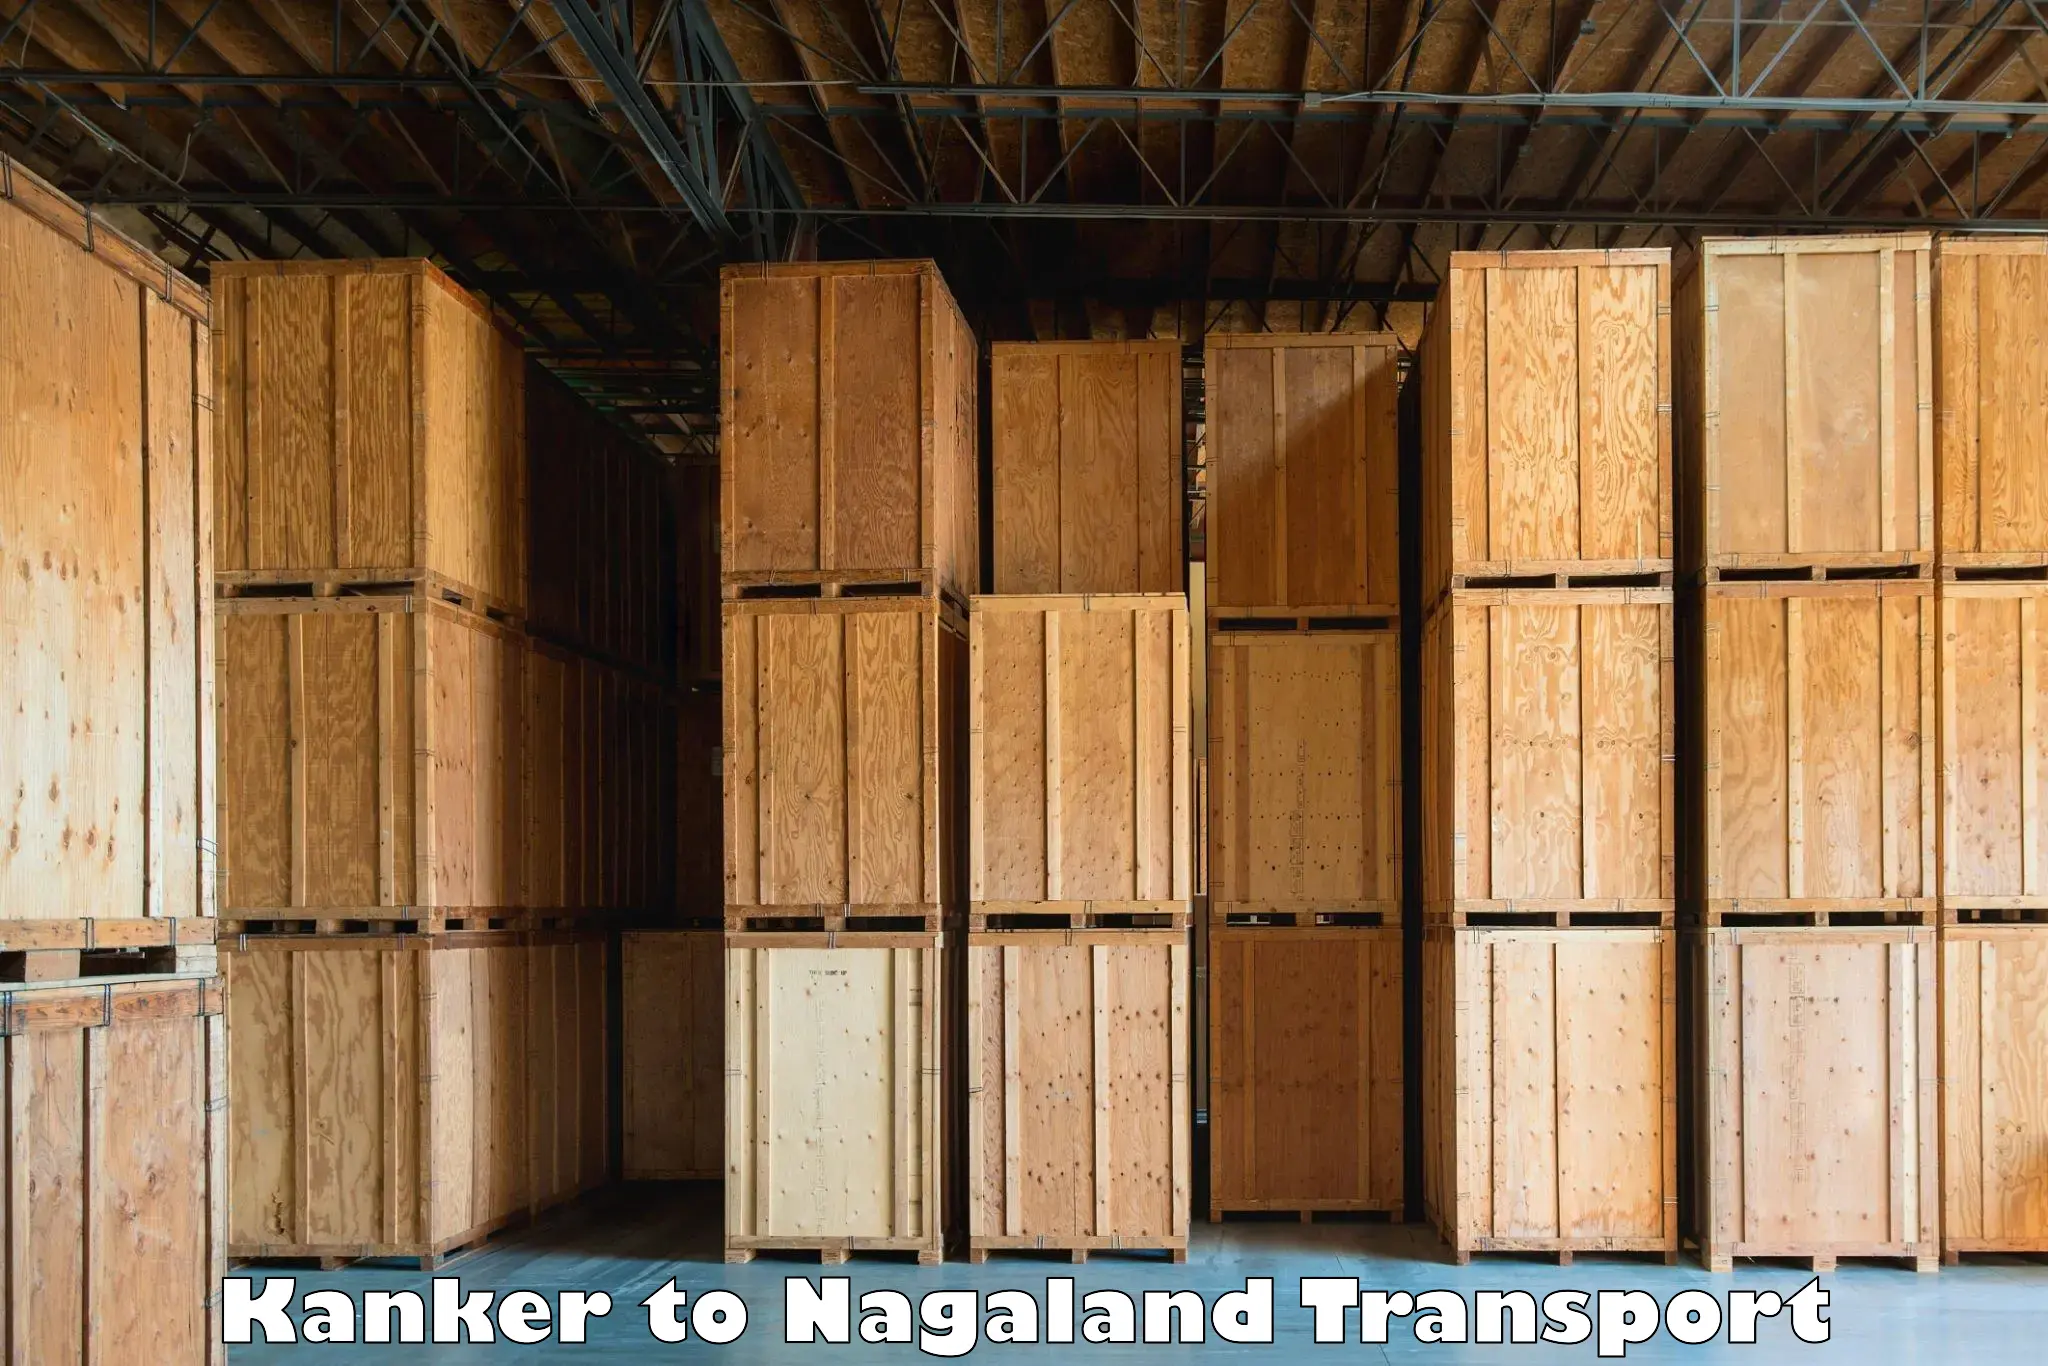 Road transport online services in Kanker to Longleng